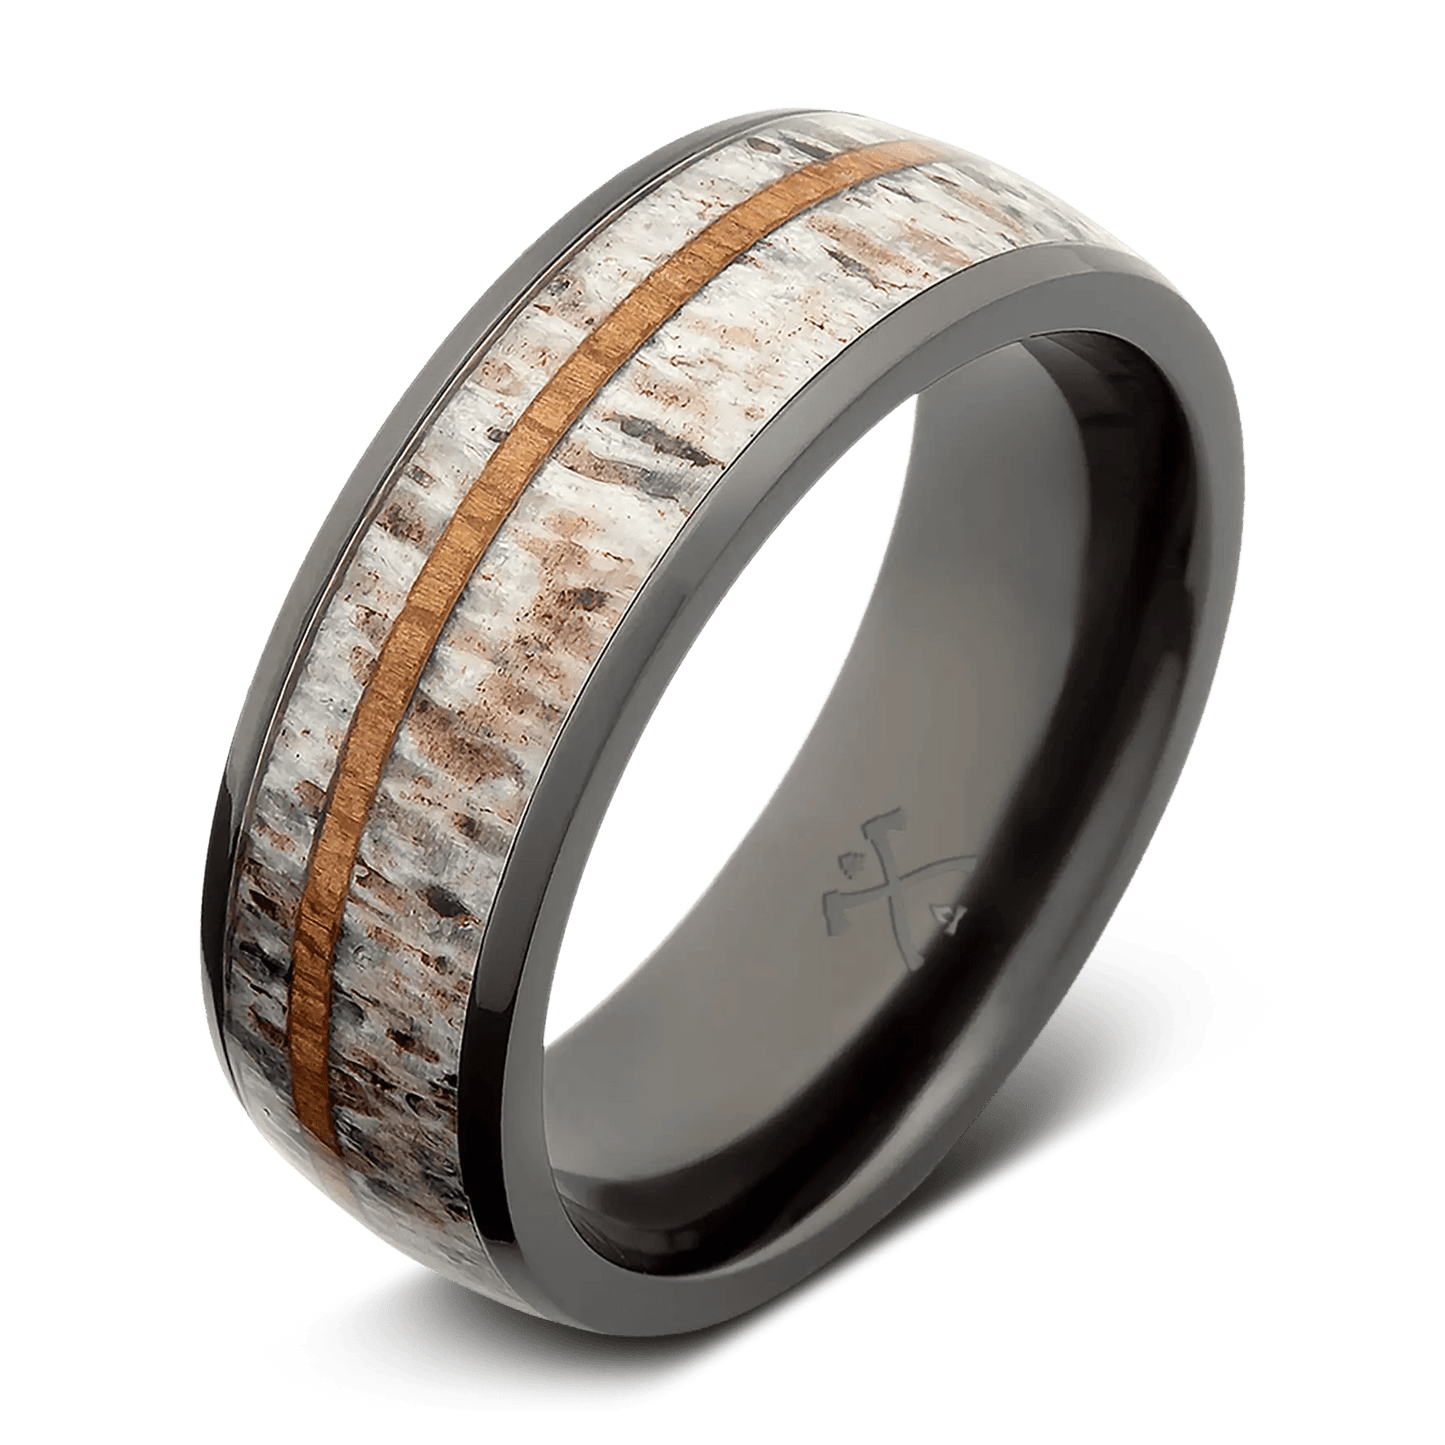 The Oryx - Men's Teakwood & Deer Antler Wedding Ring Band – Manly Bands